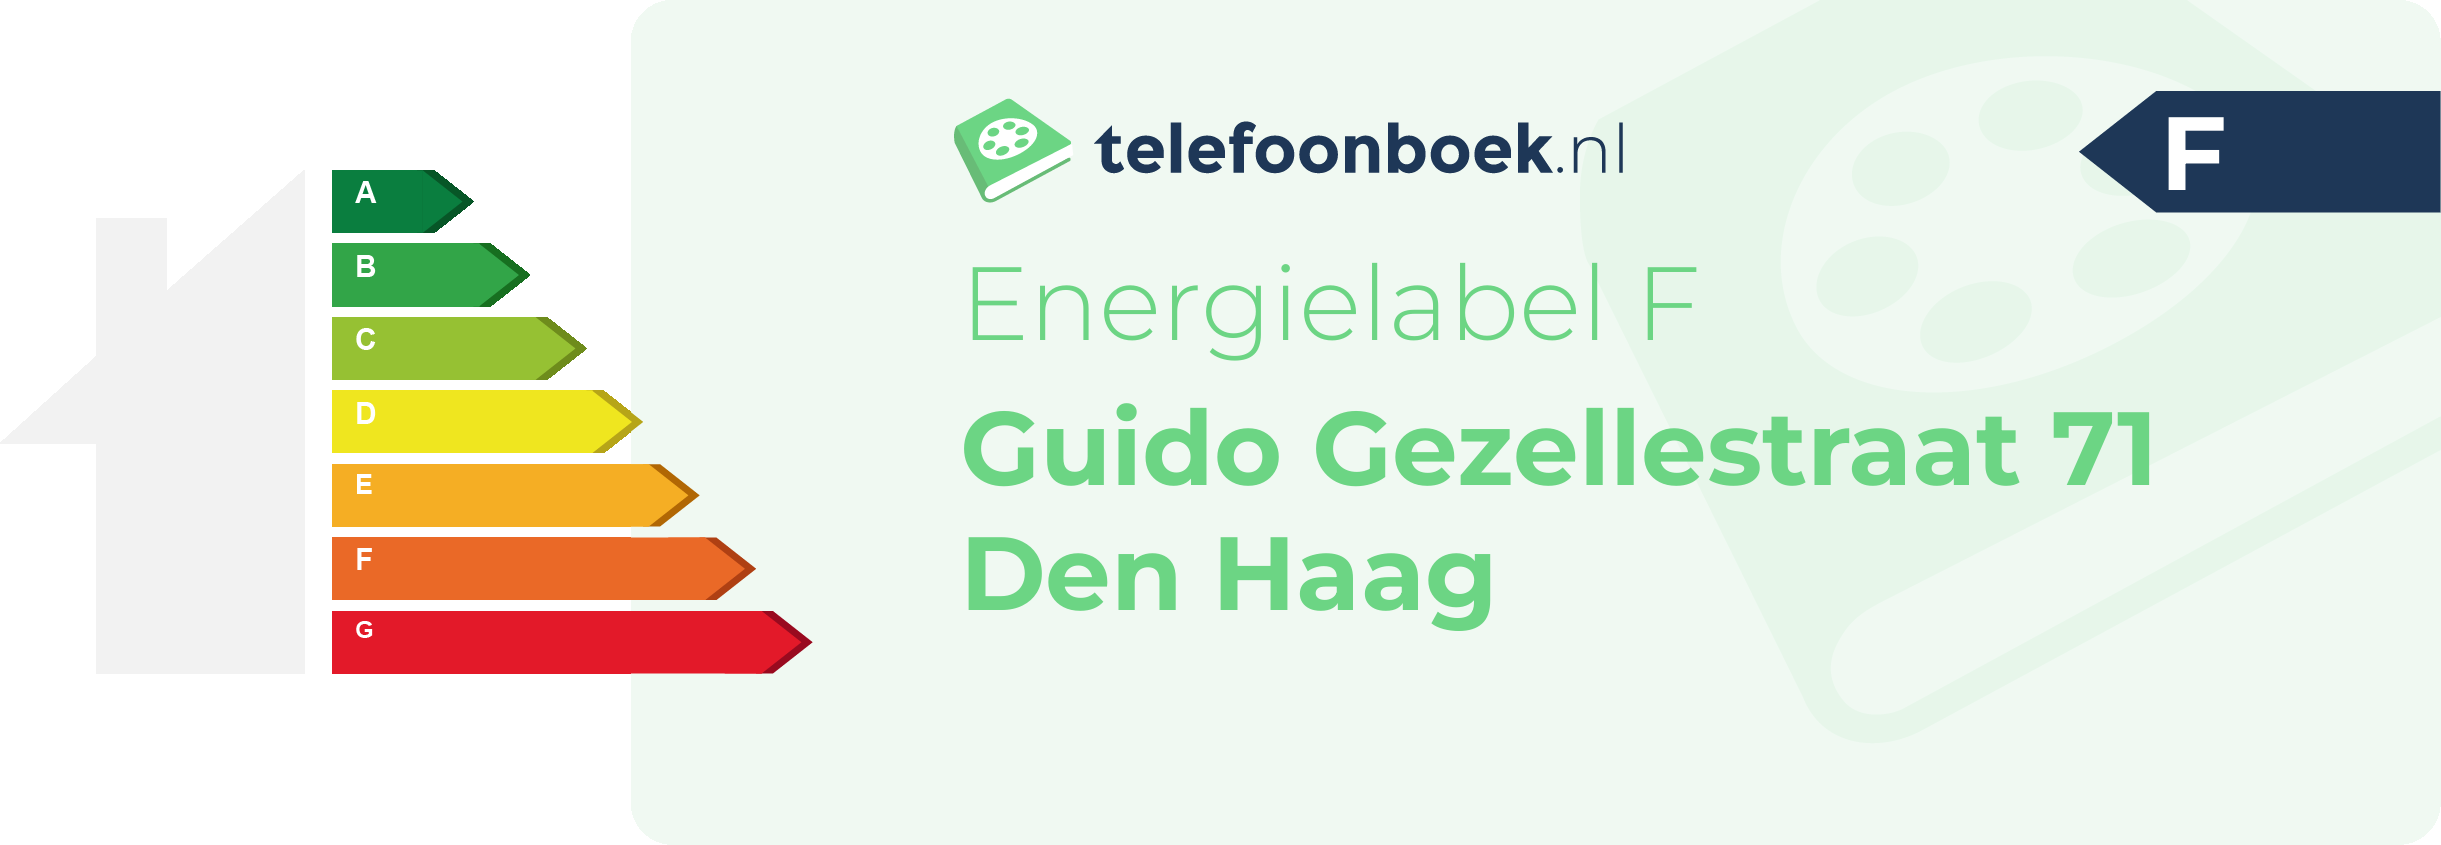 Energielabel Guido Gezellestraat 71 Den Haag